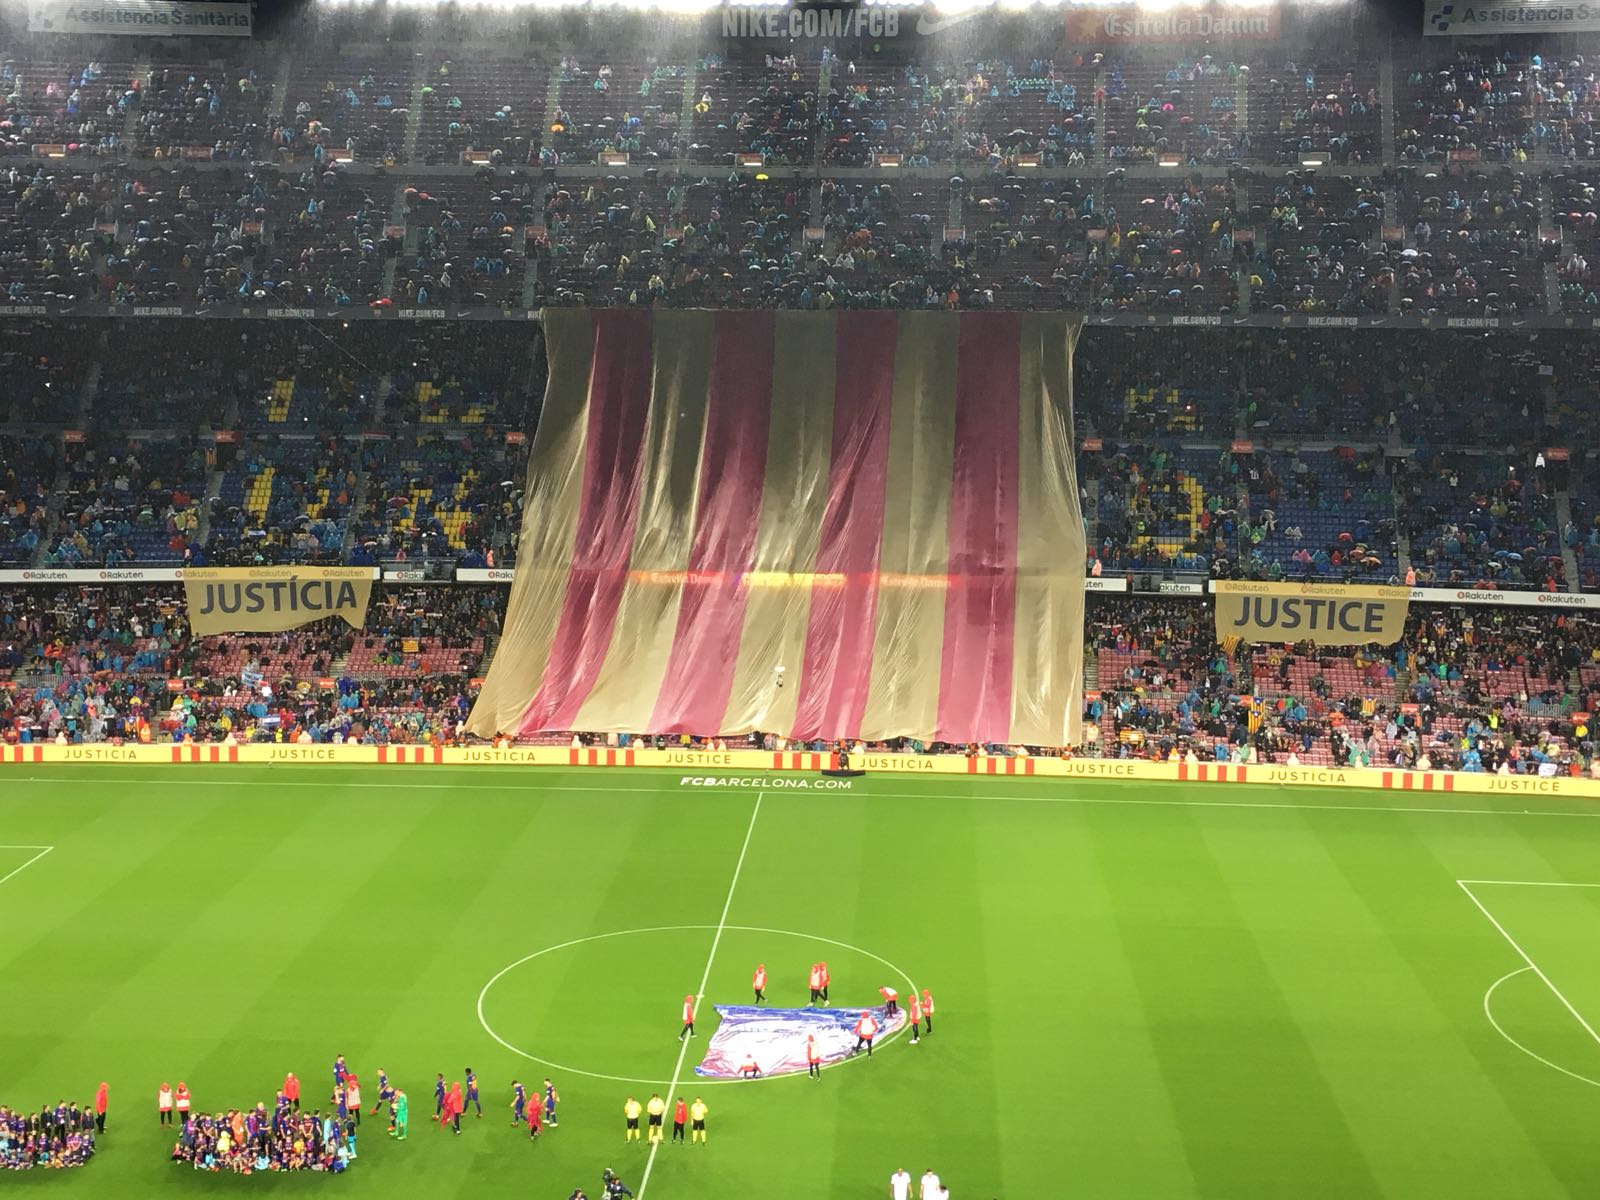 El Barça pide "justicia" con una senyera gigante